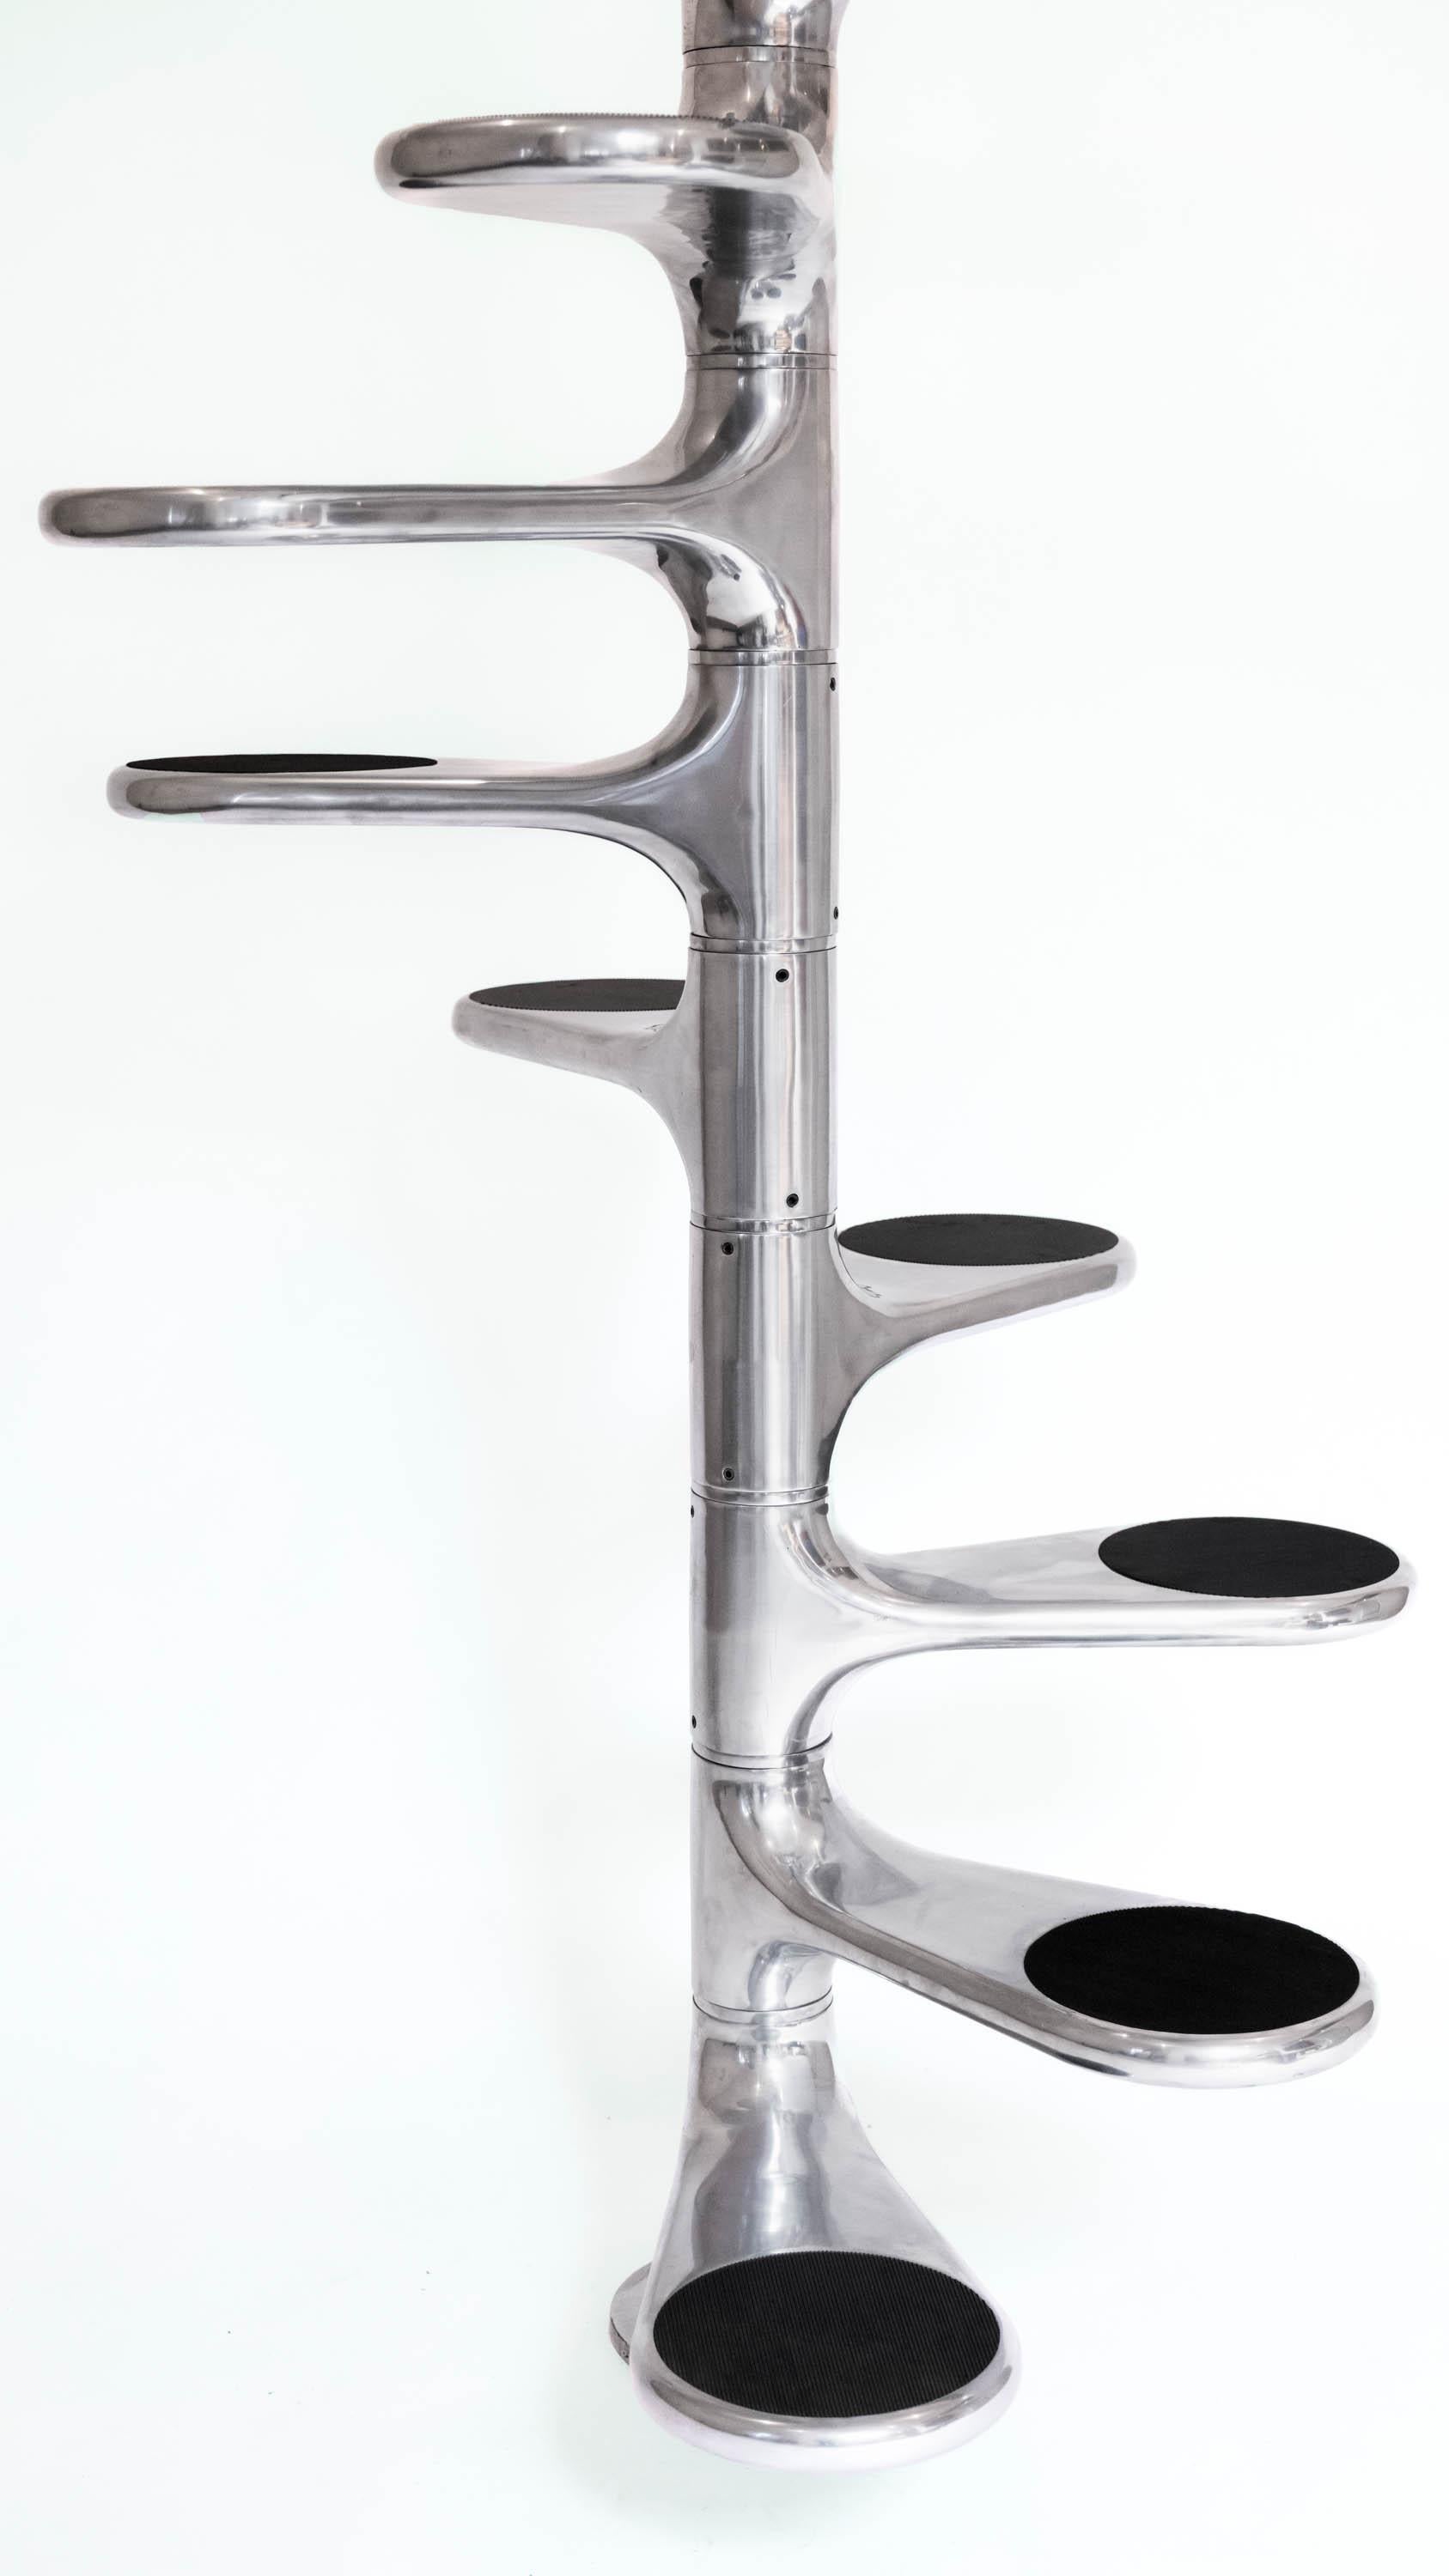 ESCALIER HÉLICOÏDAL
ROGER TALLON

Escalier hélicoïdal, également connu sous le nom d'Escalier M400, conçu par le designer industriel français Roger Tallon, produit par Sentou. 13 marches en aluminium moulé et poli avec un revêtement antidérapant